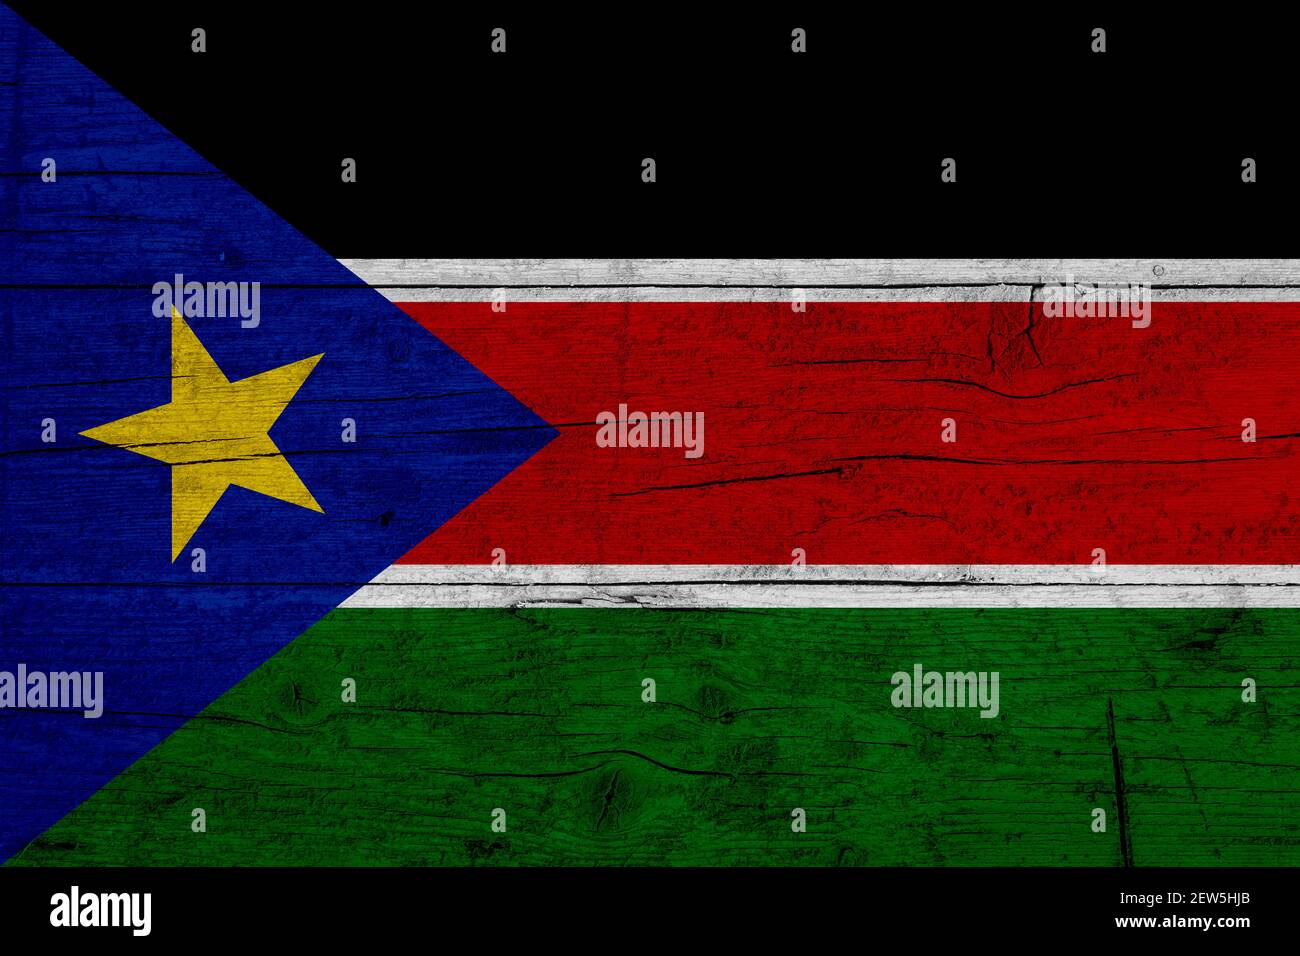 Bandera De Sudán Del Sur Textura De Madera De La Bandera De Sudán Del Sur Fotografía De Stock